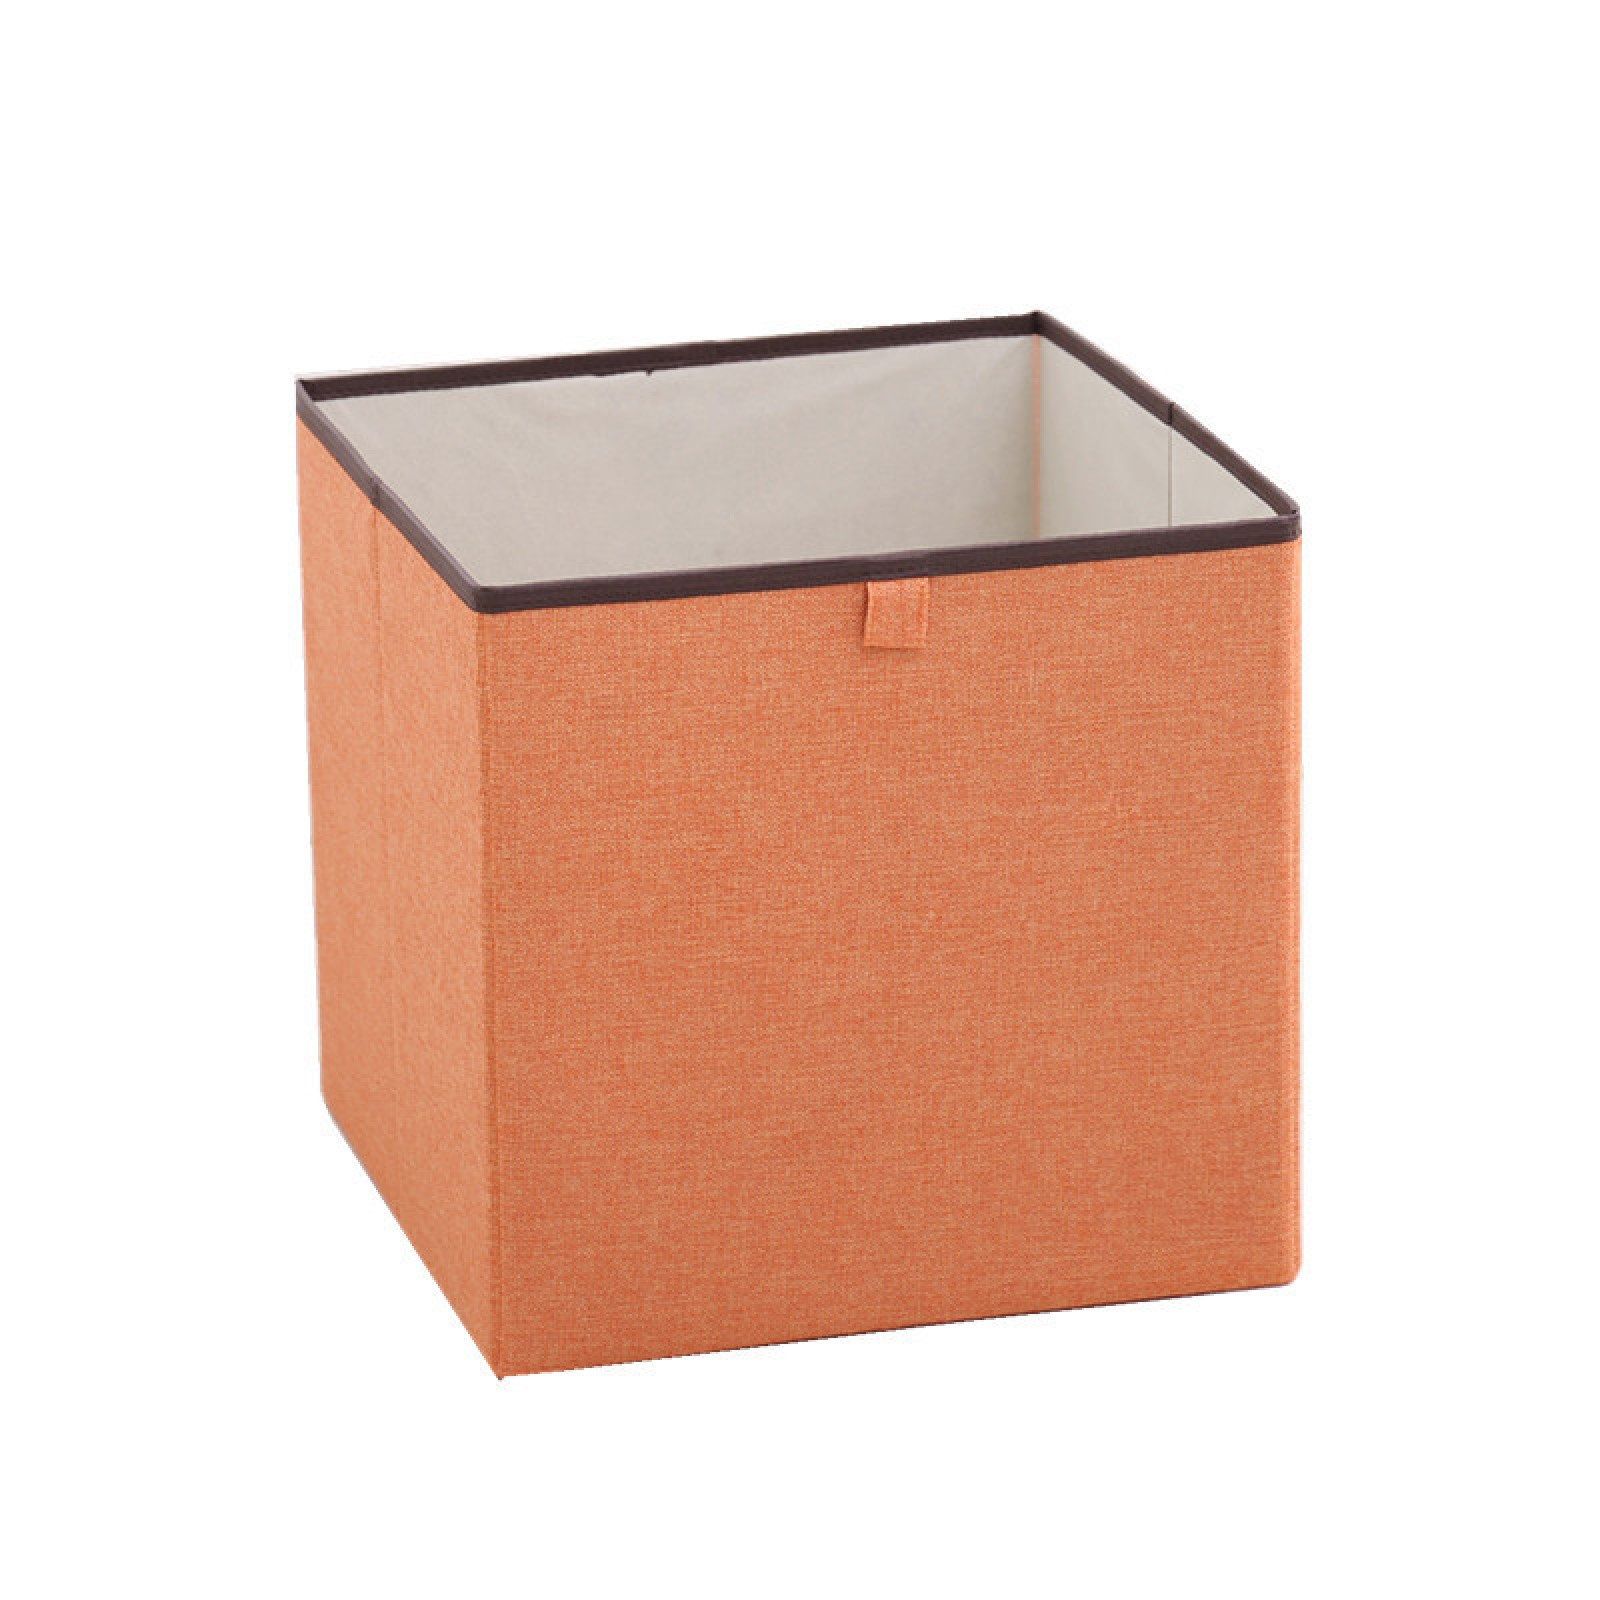 Оби коробки. Коробки для хранения без крышки. Короб для хранения оранжевый.